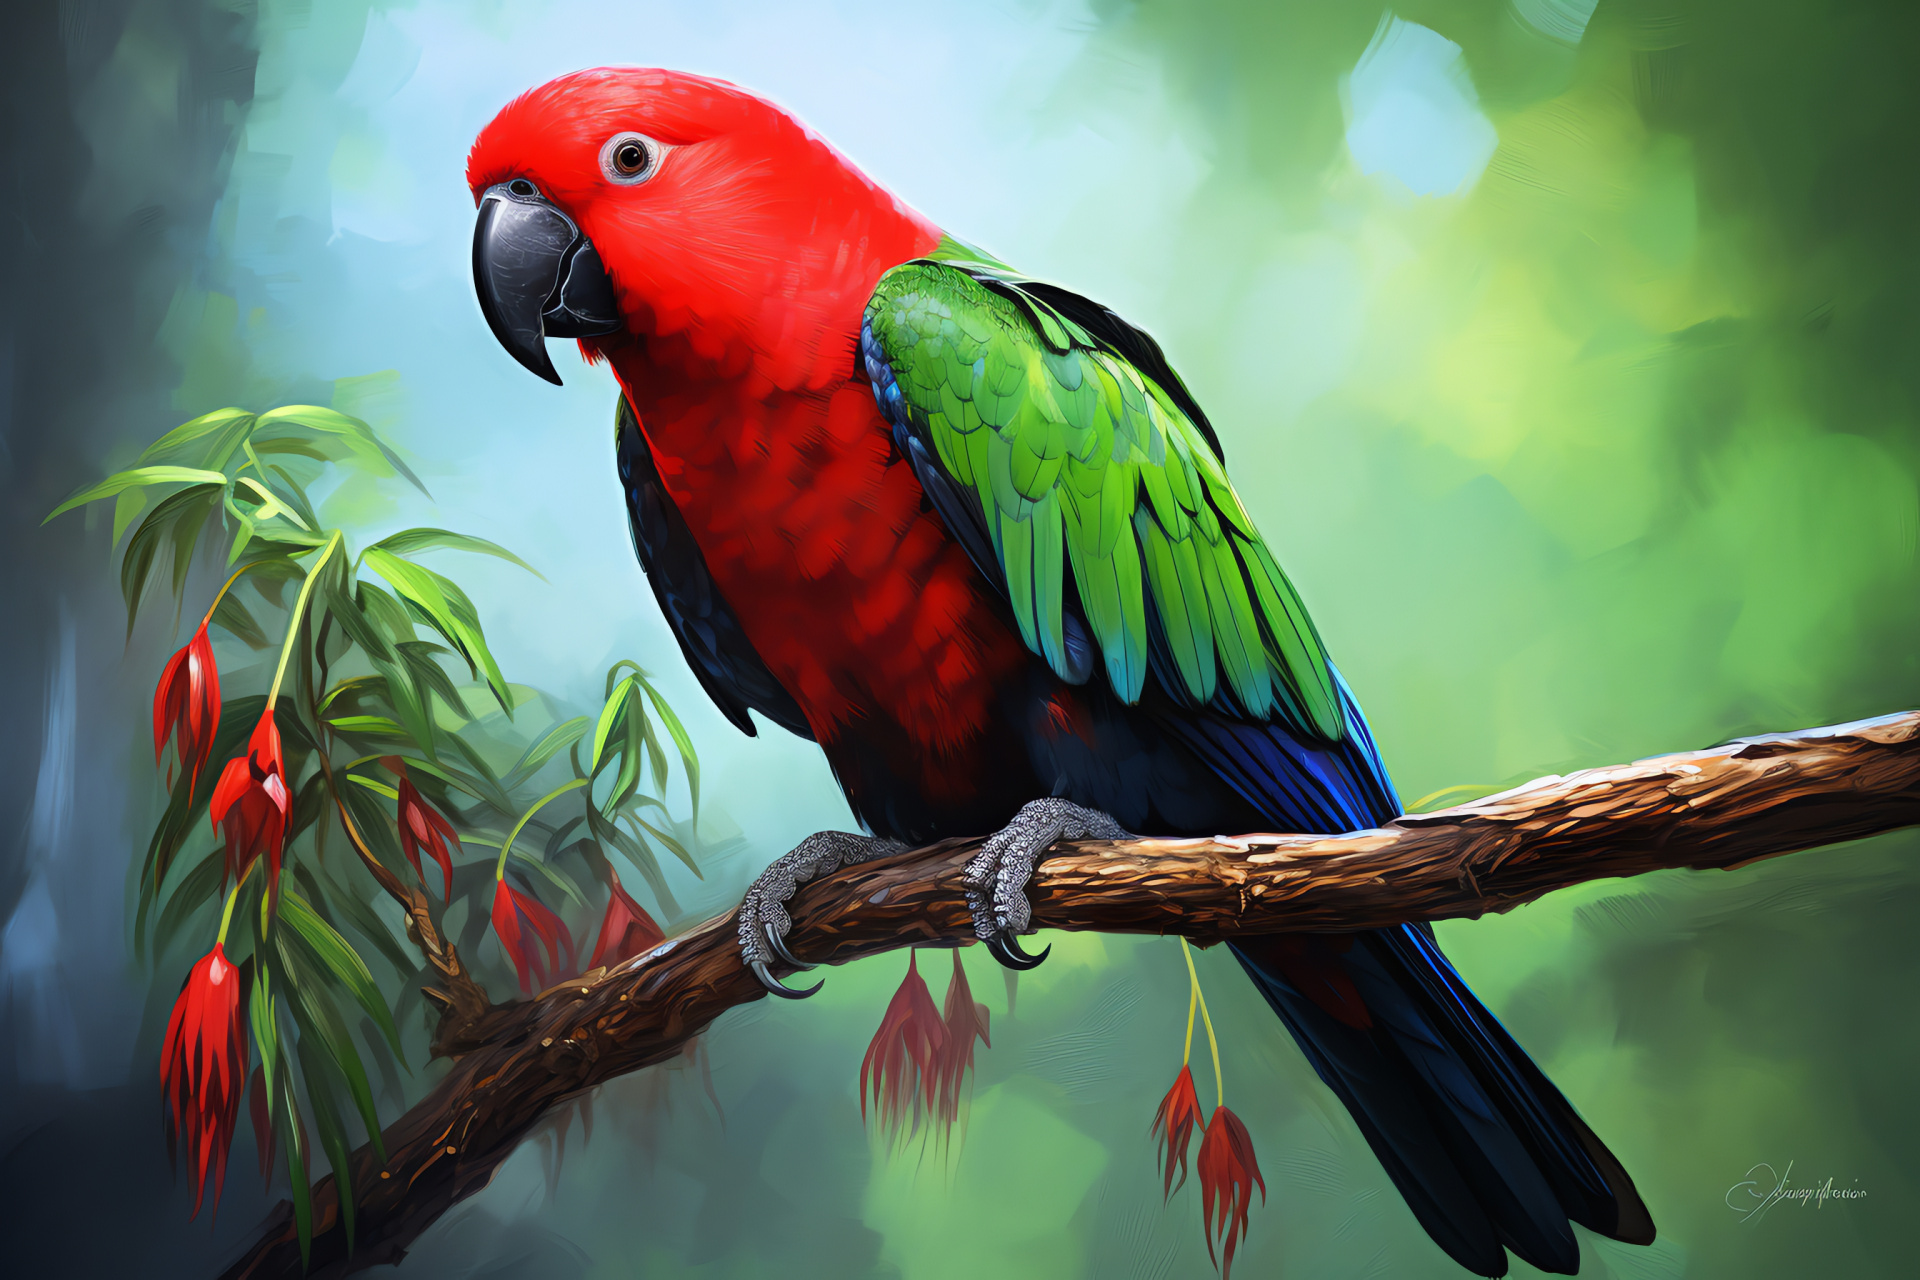 Eclectus parrot, Red sided bird, Tropical avian fauna, Vibrant green plumage, Black eyed bird, HD Desktop Wallpaper